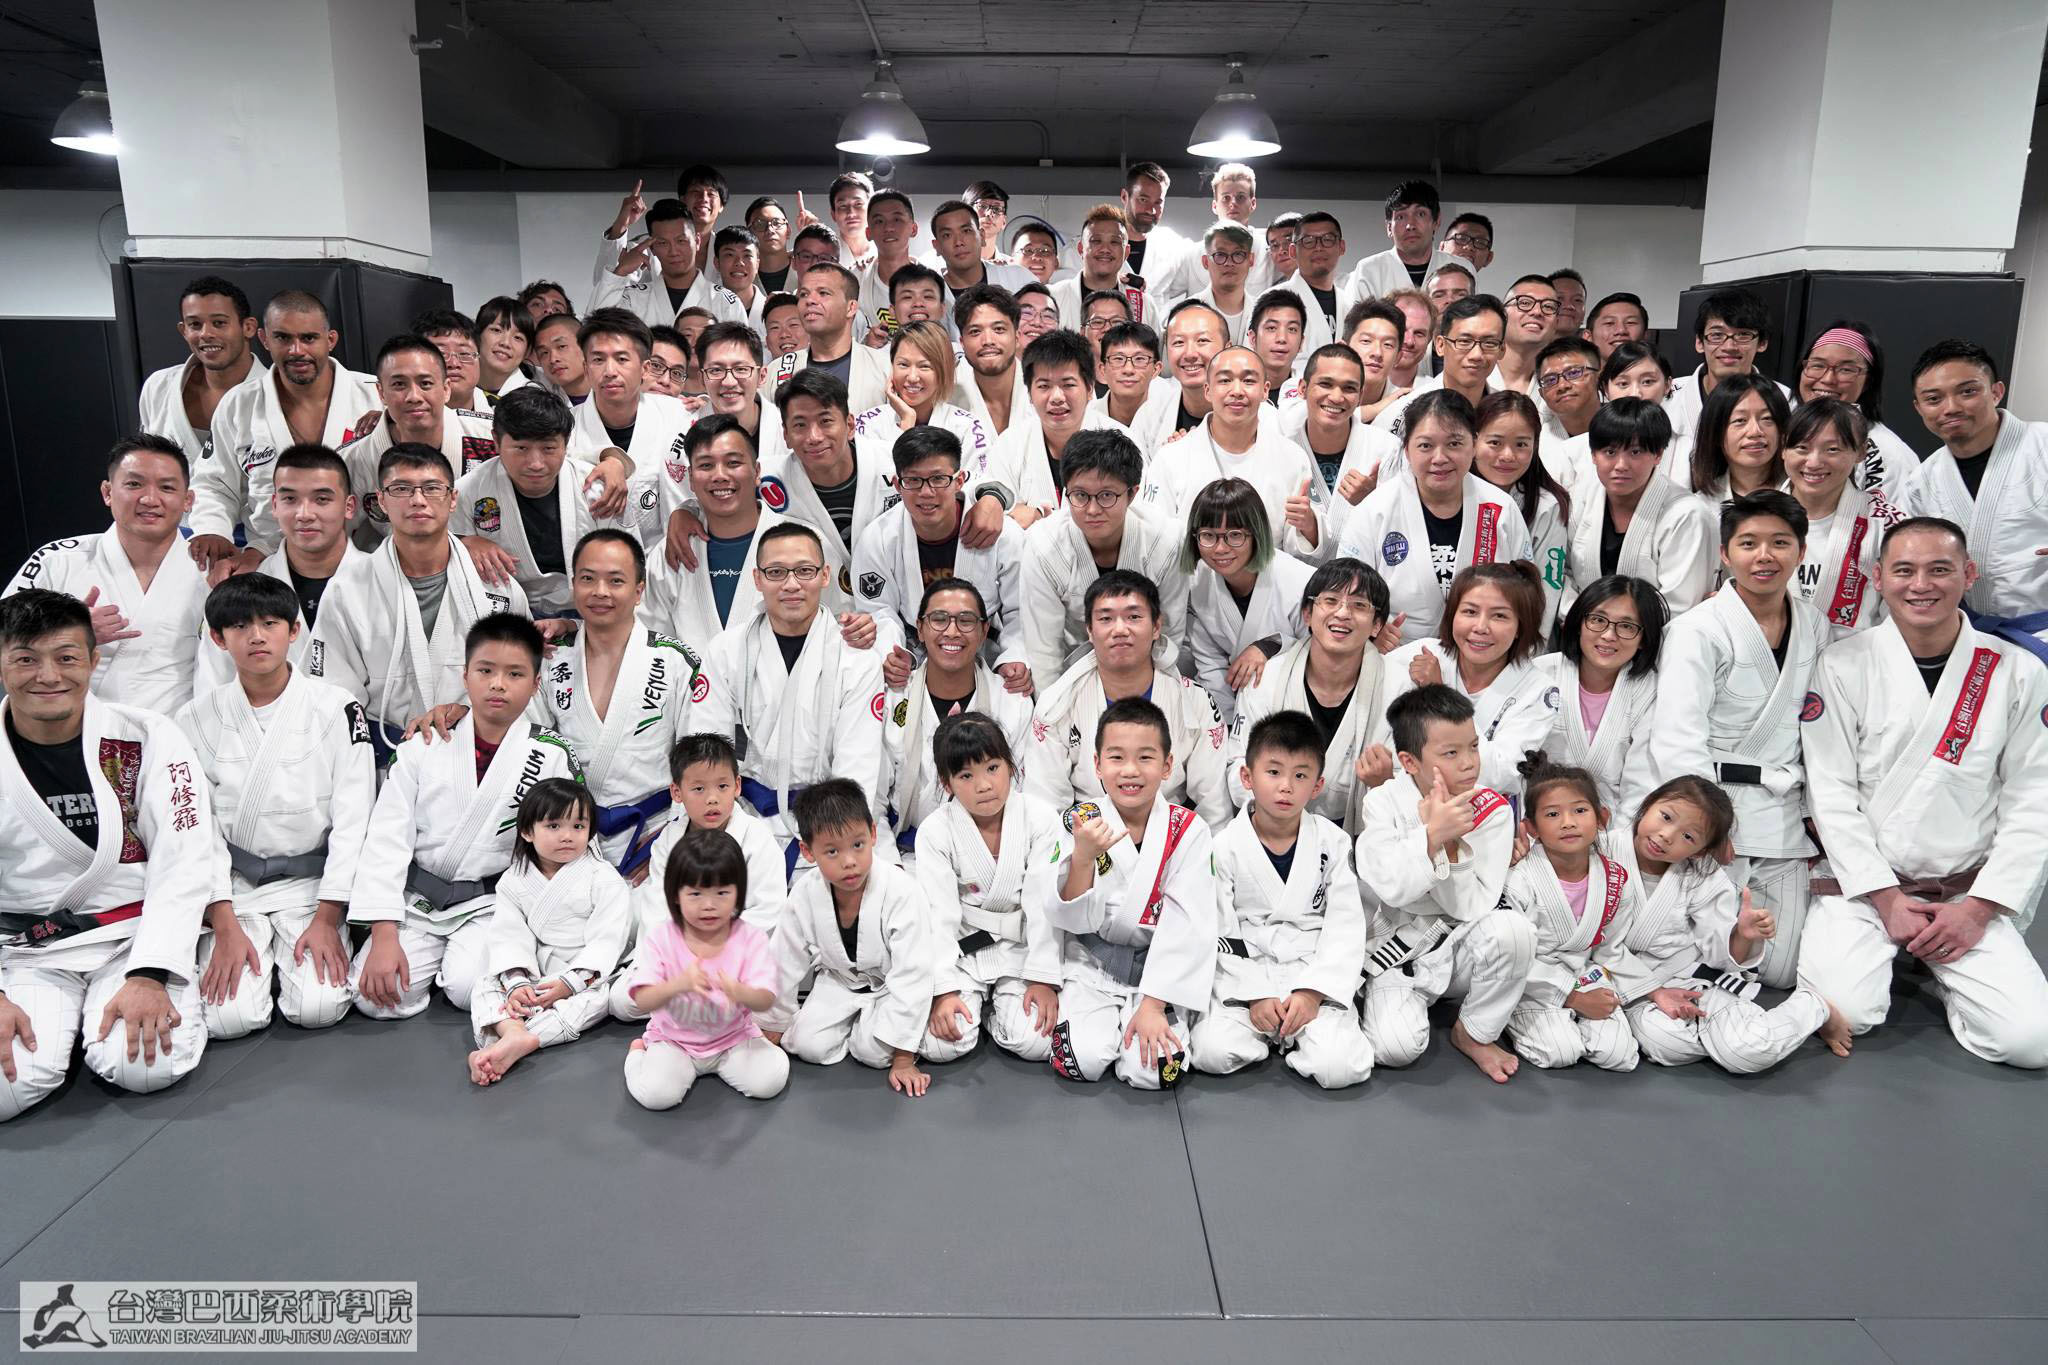 Taiwan Brazilian Jiu-Jitsu Academy (Taiwan BJJ)